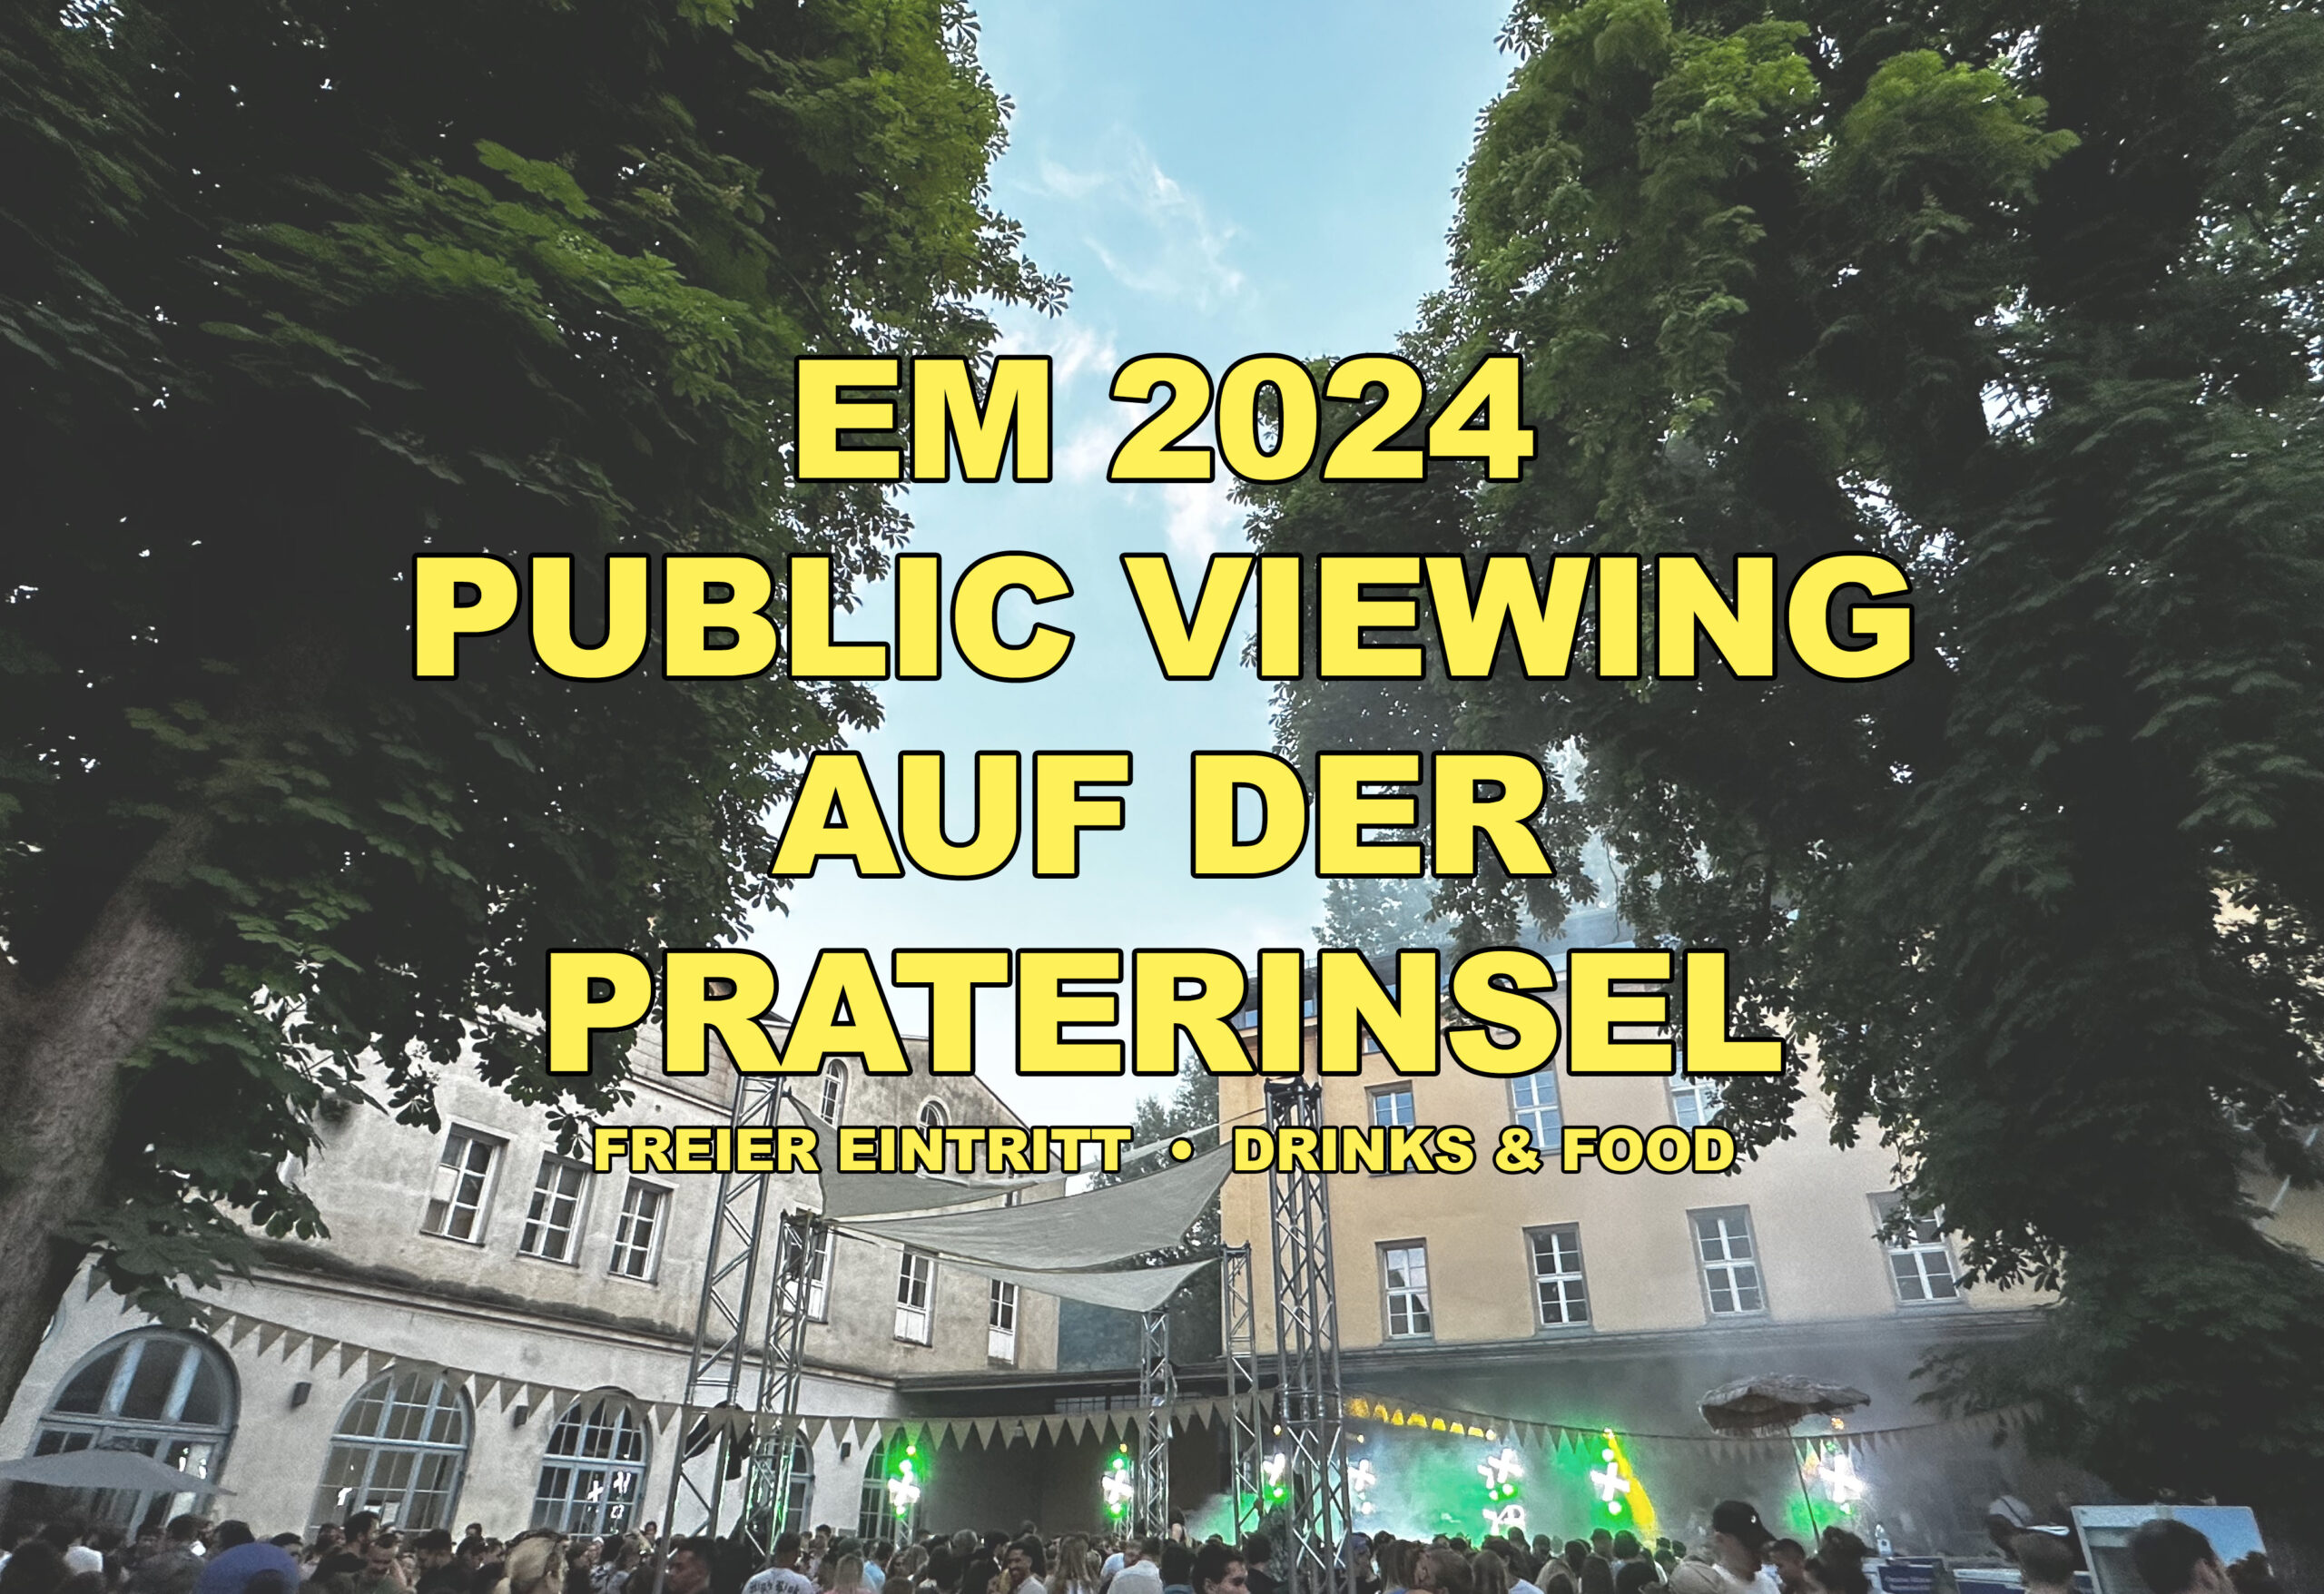 Du betrachtest gerade EM 2024 Public Viewing auf der Praterinsel